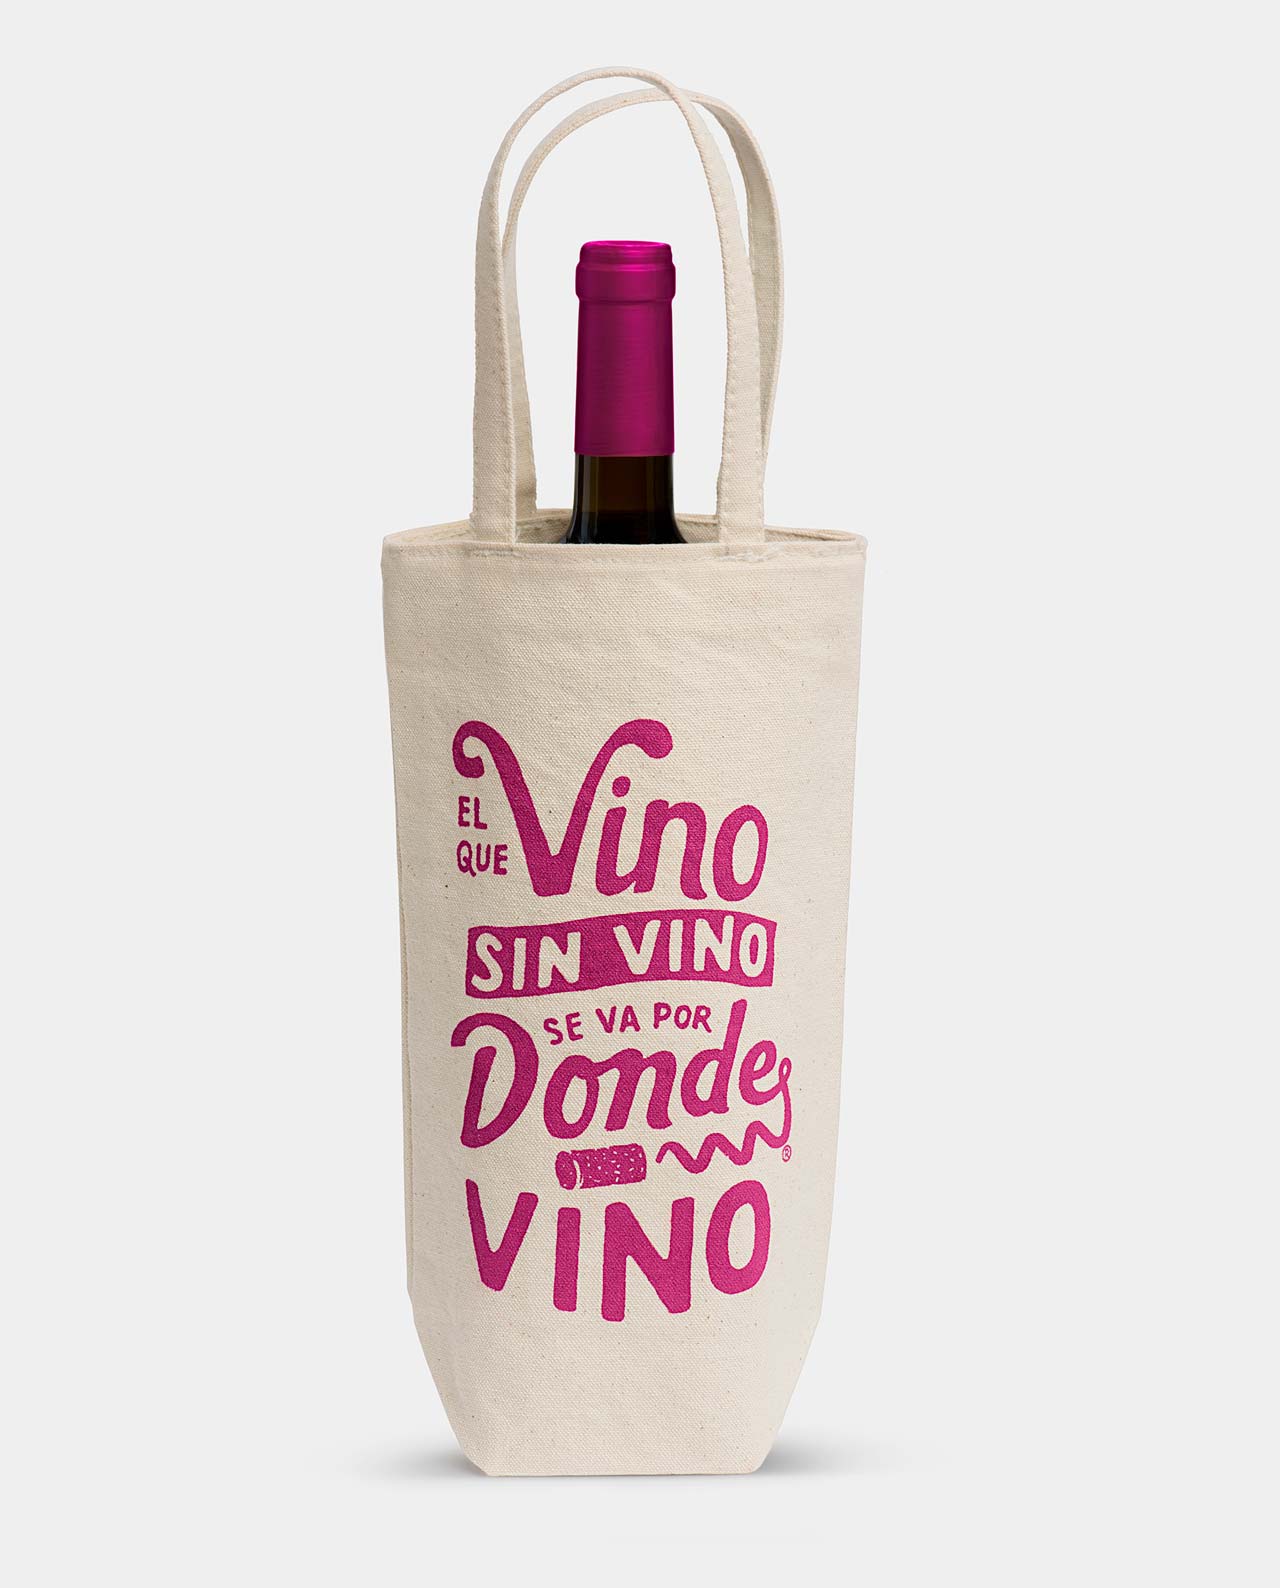 La bolsa ideal para regalar vino.El que Vino sin Vino se va por donde Vino.Comercio  justo. - Factoría Aldo Cruz